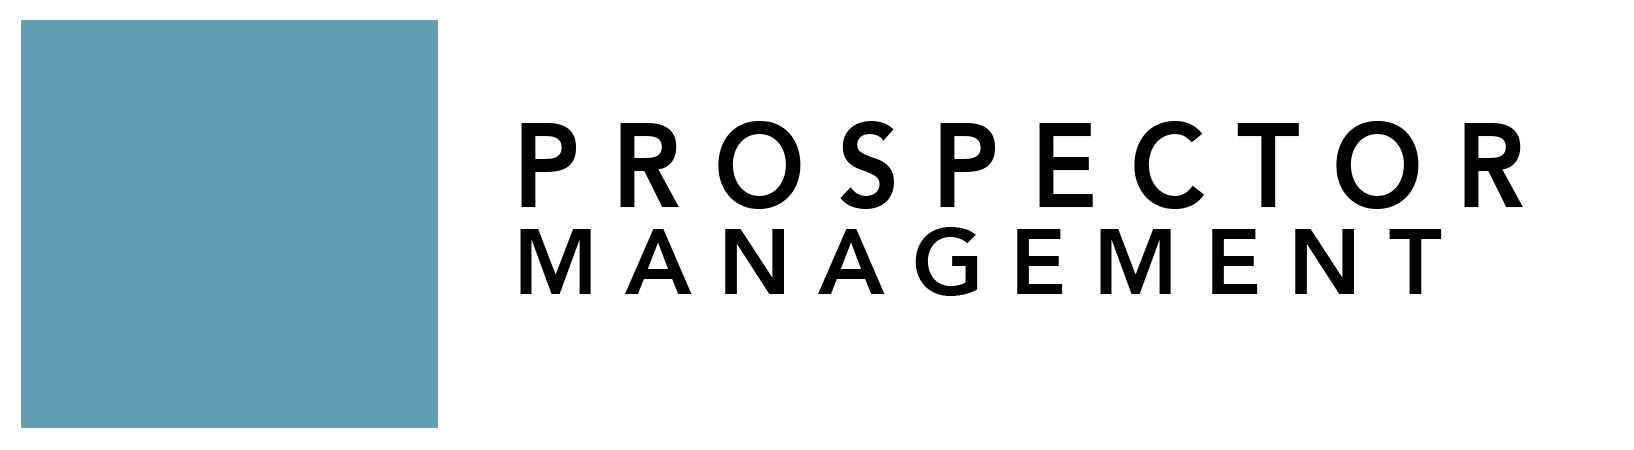 Prospector Property Management Logo